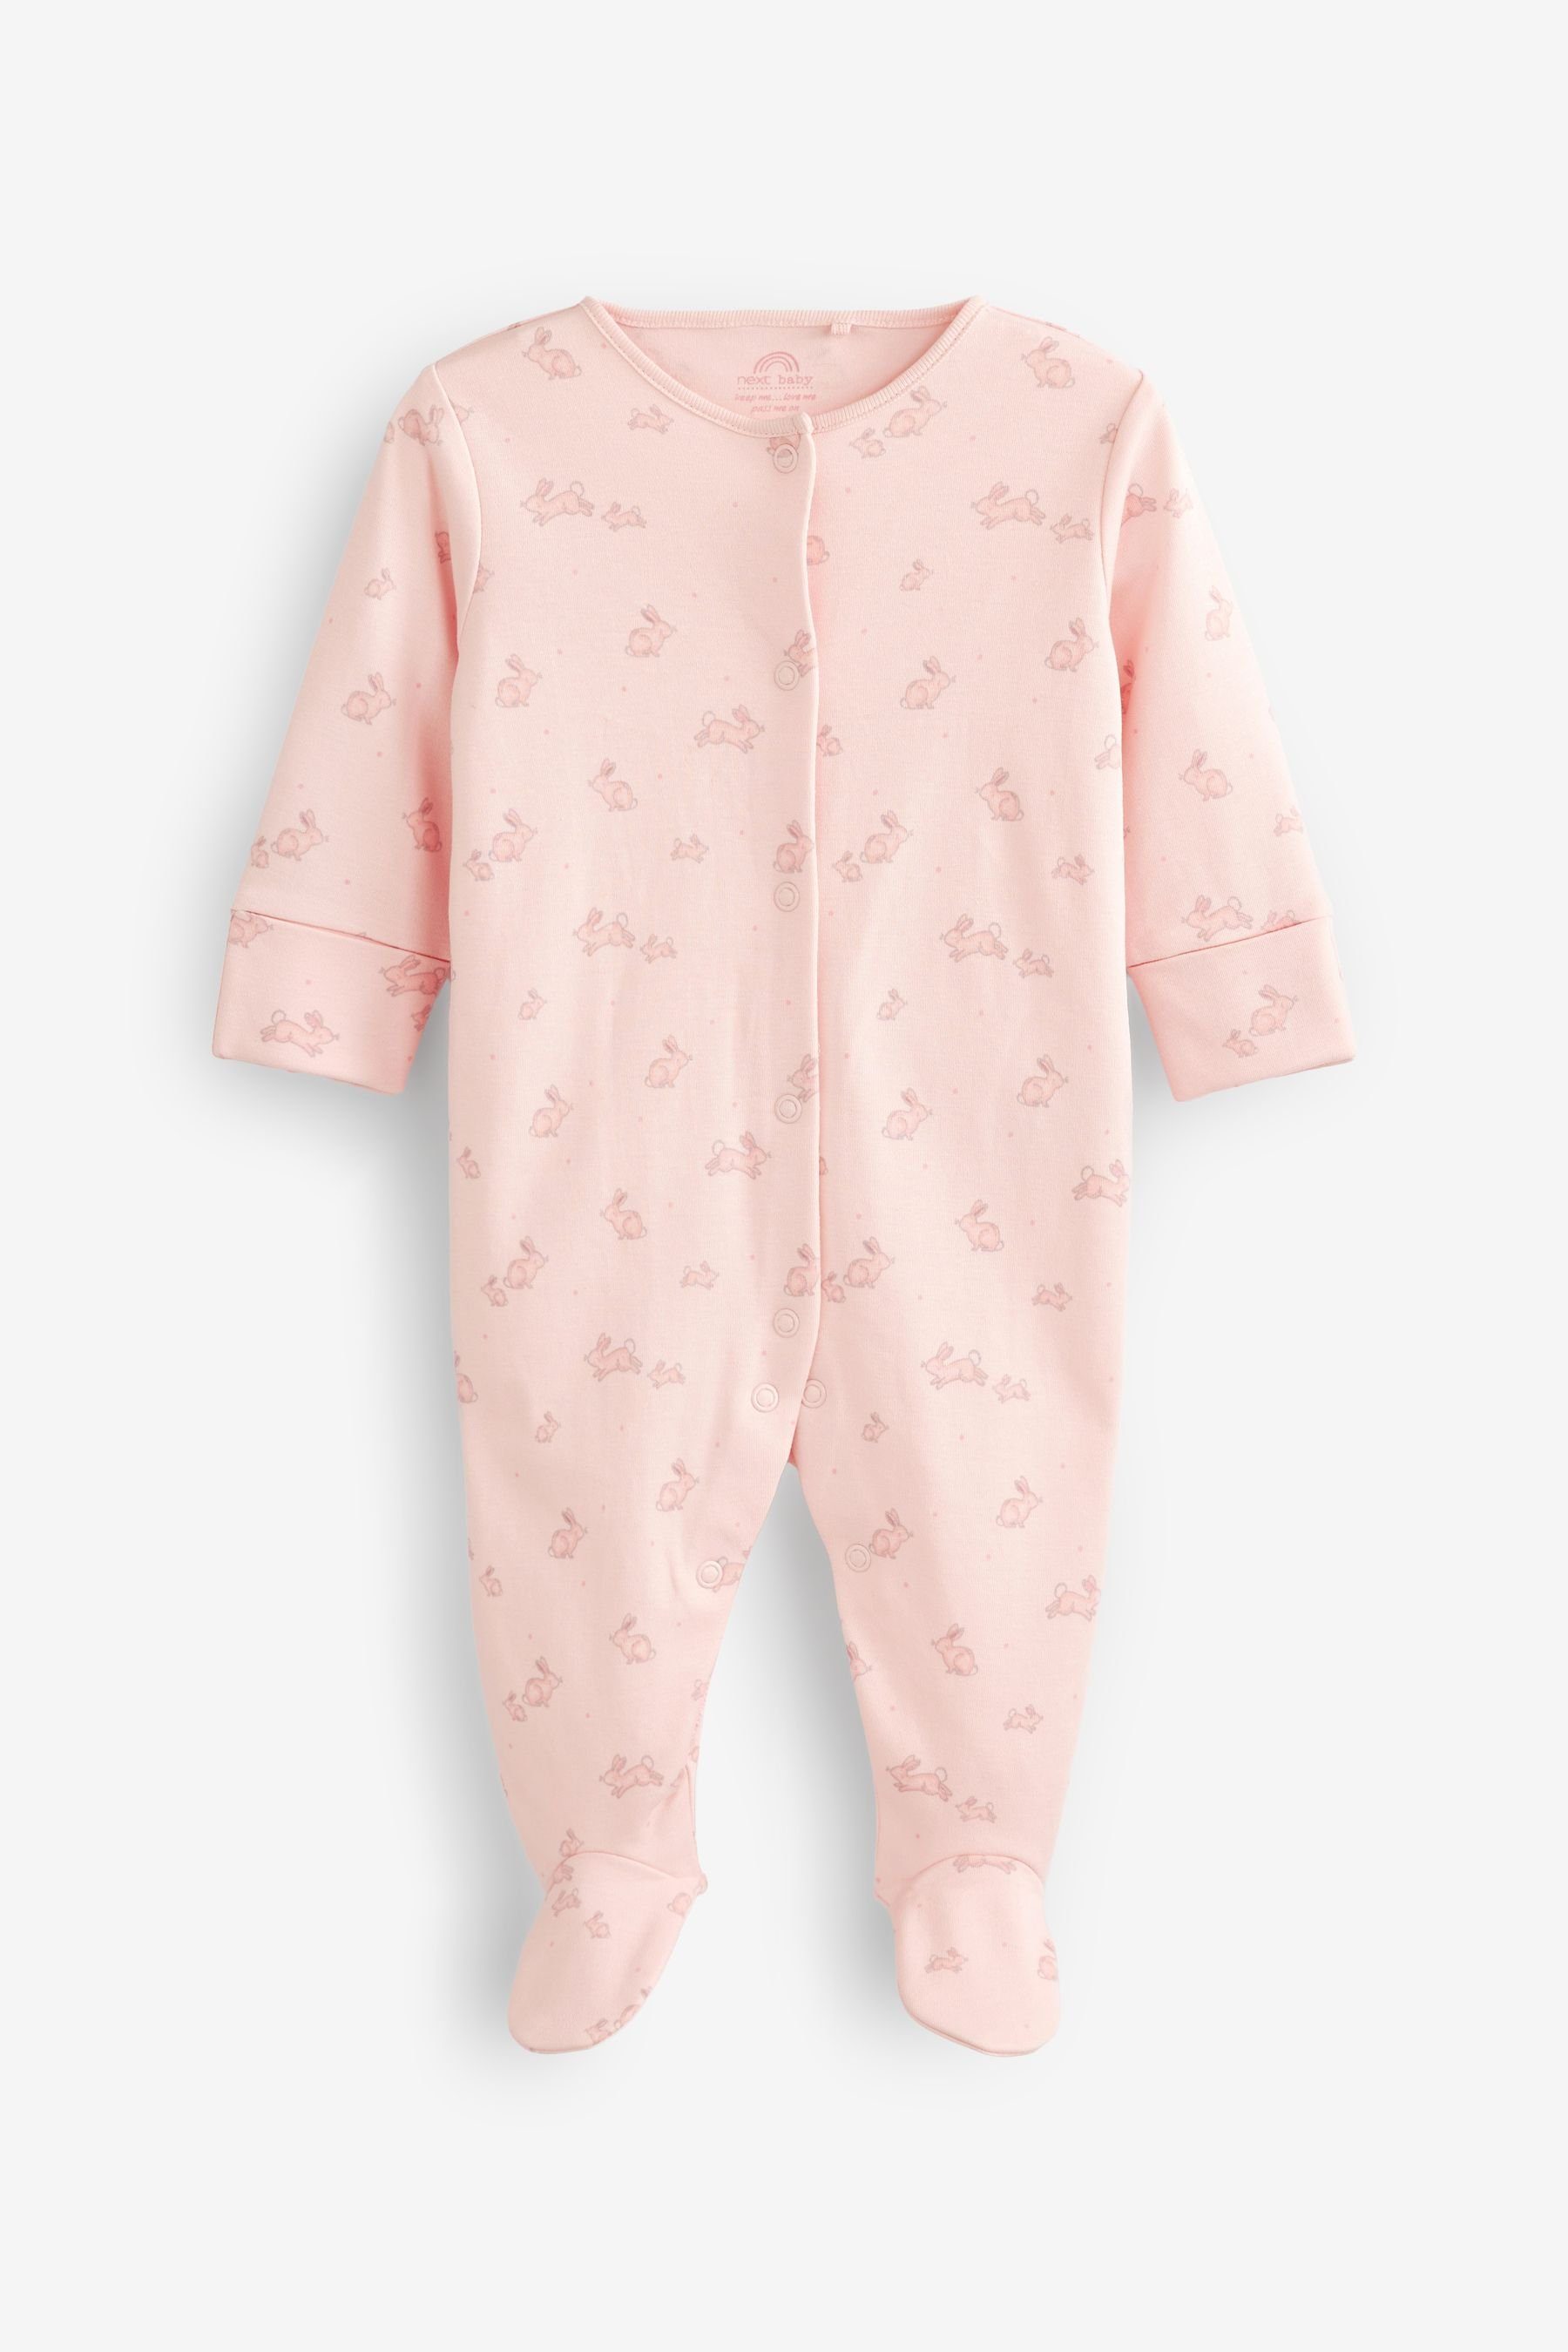 Next Schlafoverall 4 x Delicate Pink Pale Babys (4-tlg) Schlafanzüge für Bunny